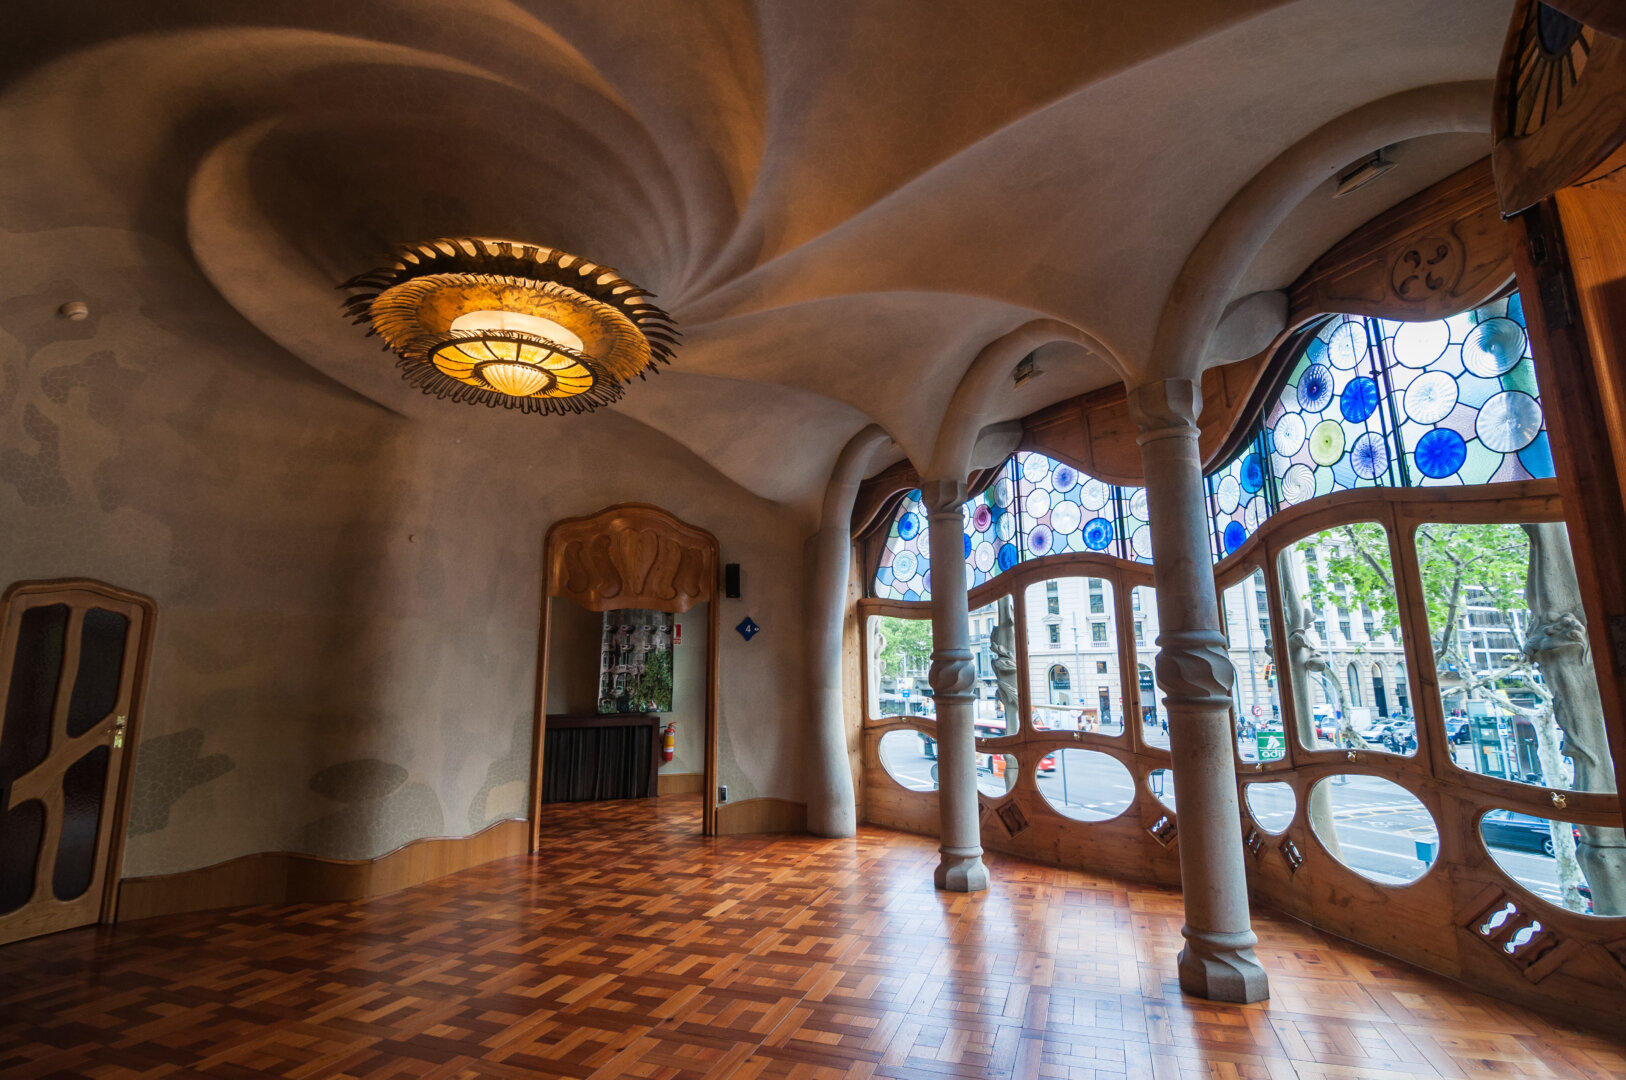 Az Antoni Gaudí tervezte Casa Batlló földszinti szalonja - forrás: wikipedia